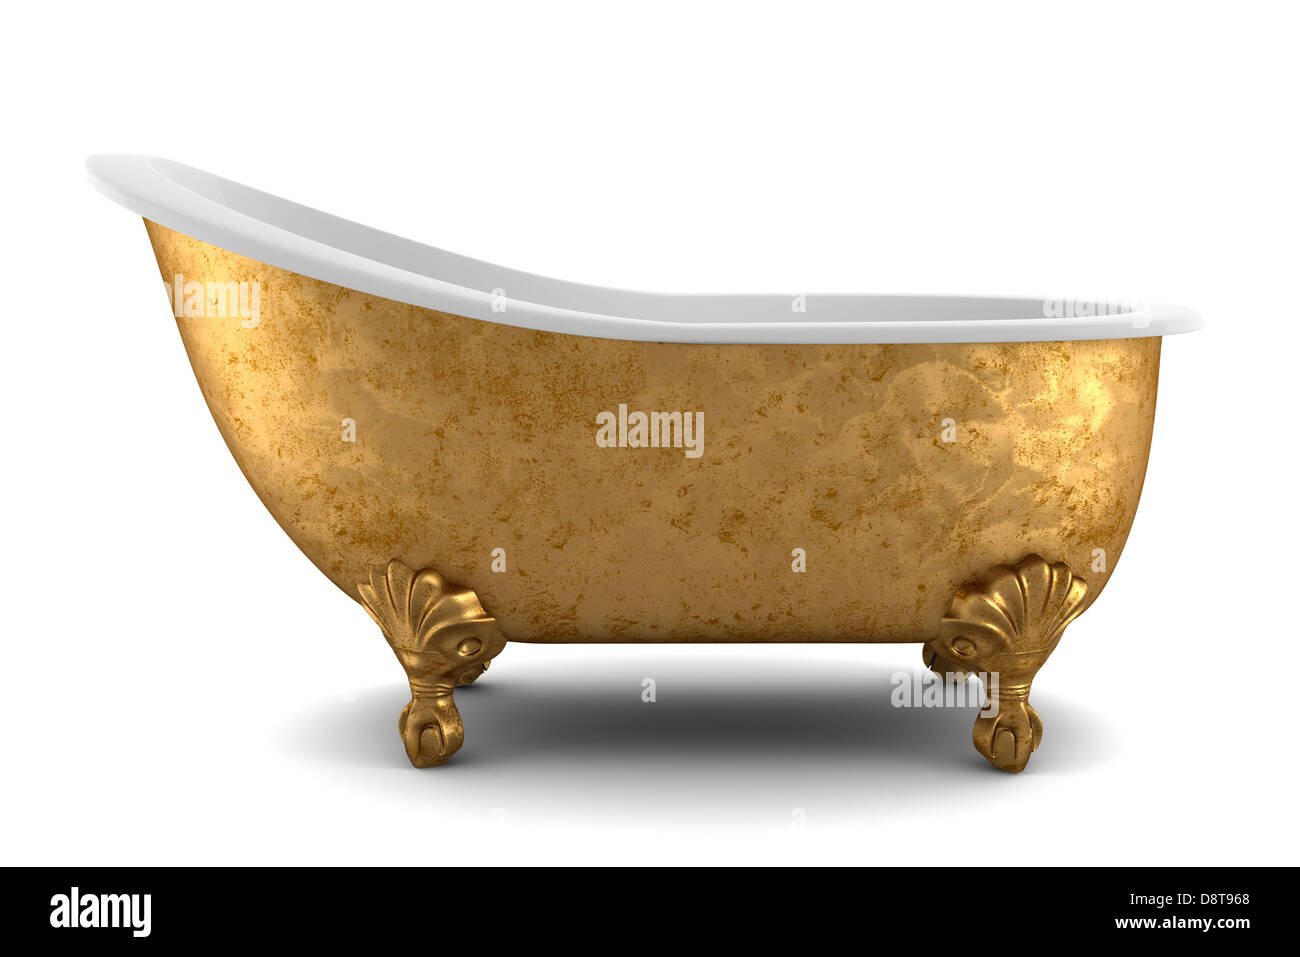 classic bathtub isolated on white background Stock Photo